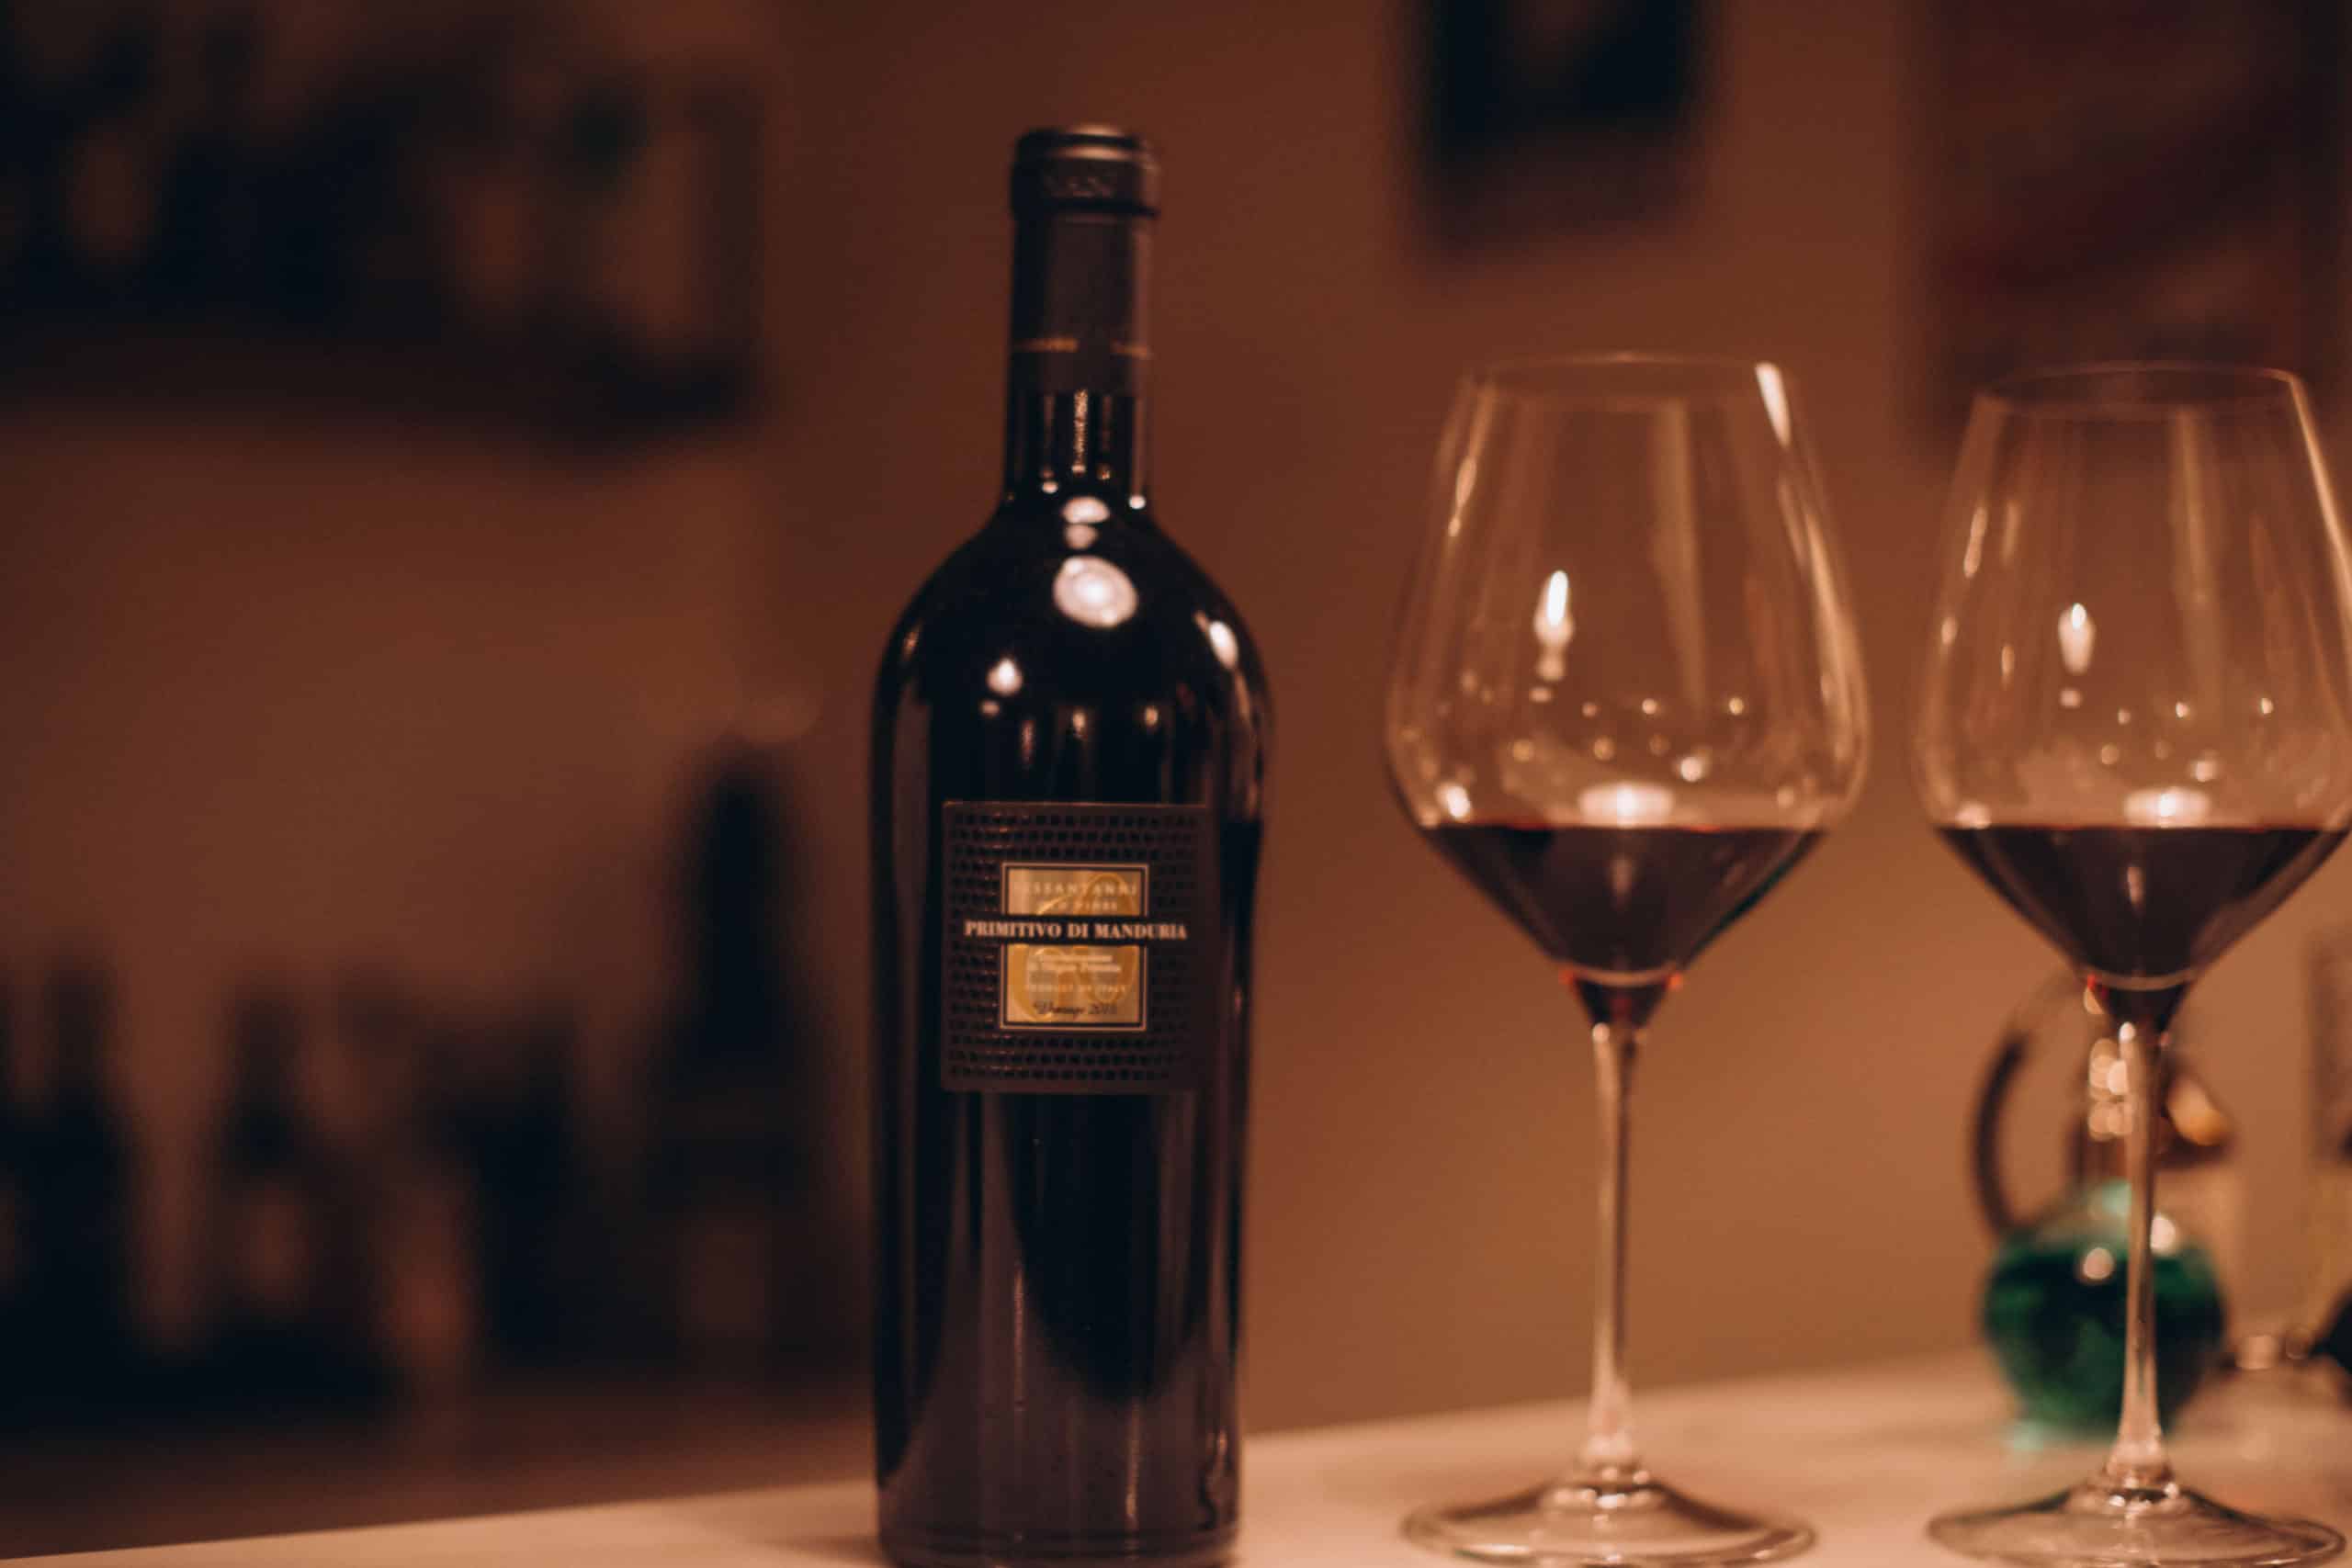 primitivo di manduria, San Marzano 60 anni, wine, photo